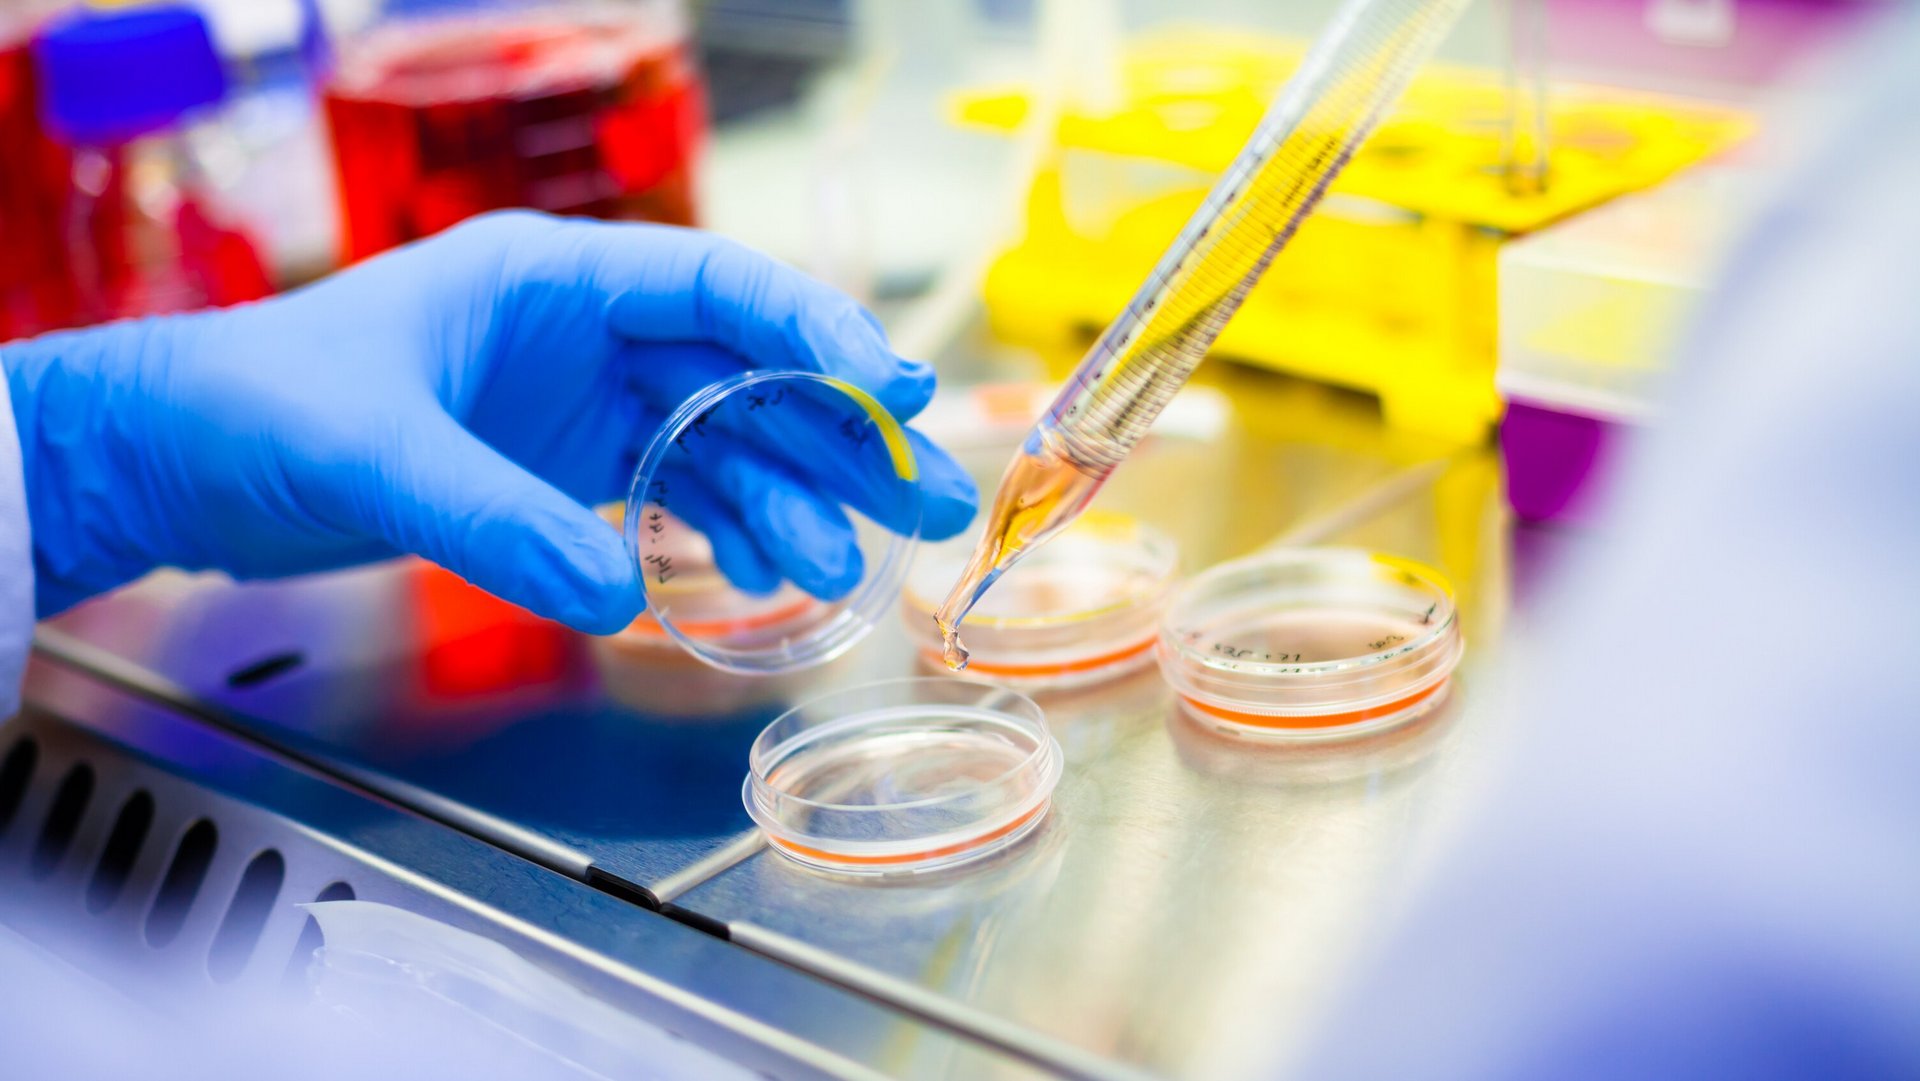 Auf dem Labortisch: Hand in blauem Gummihandschuh öffnet eine Zellkulturschale, in die aus einer Pipette Medium getropft wird